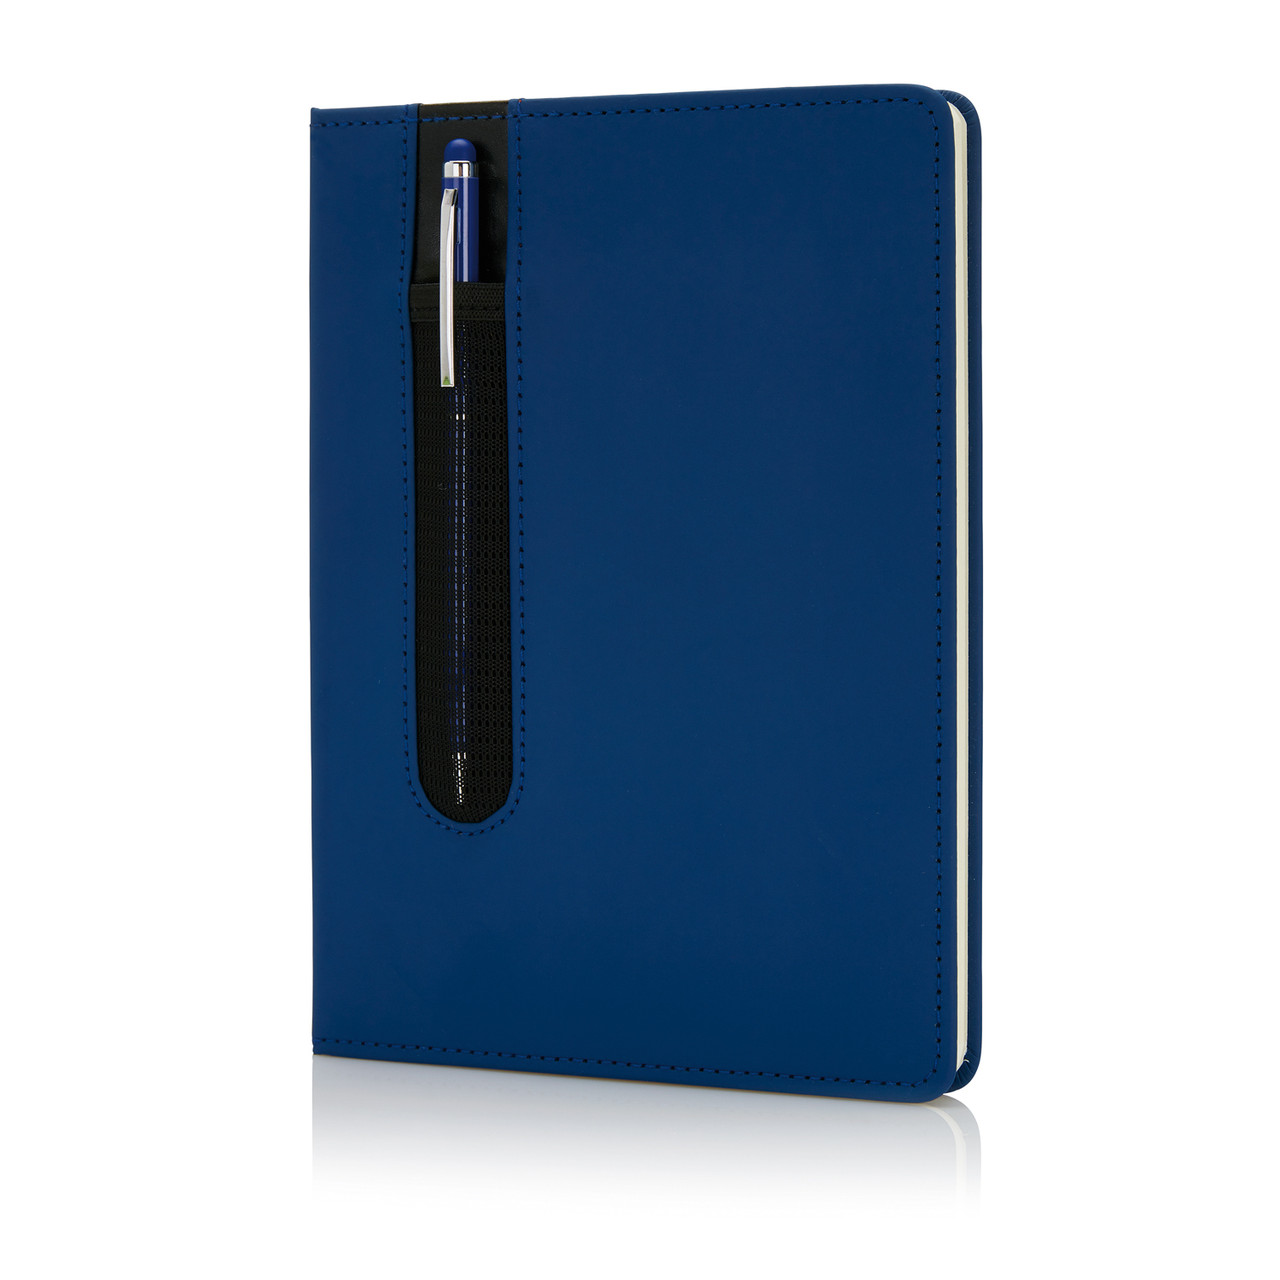 Блокнот для записей Deluxe формата A5 и ручка-стилус, темно-синий; , Длина 1,6 см., ширина 20,3 см., высота